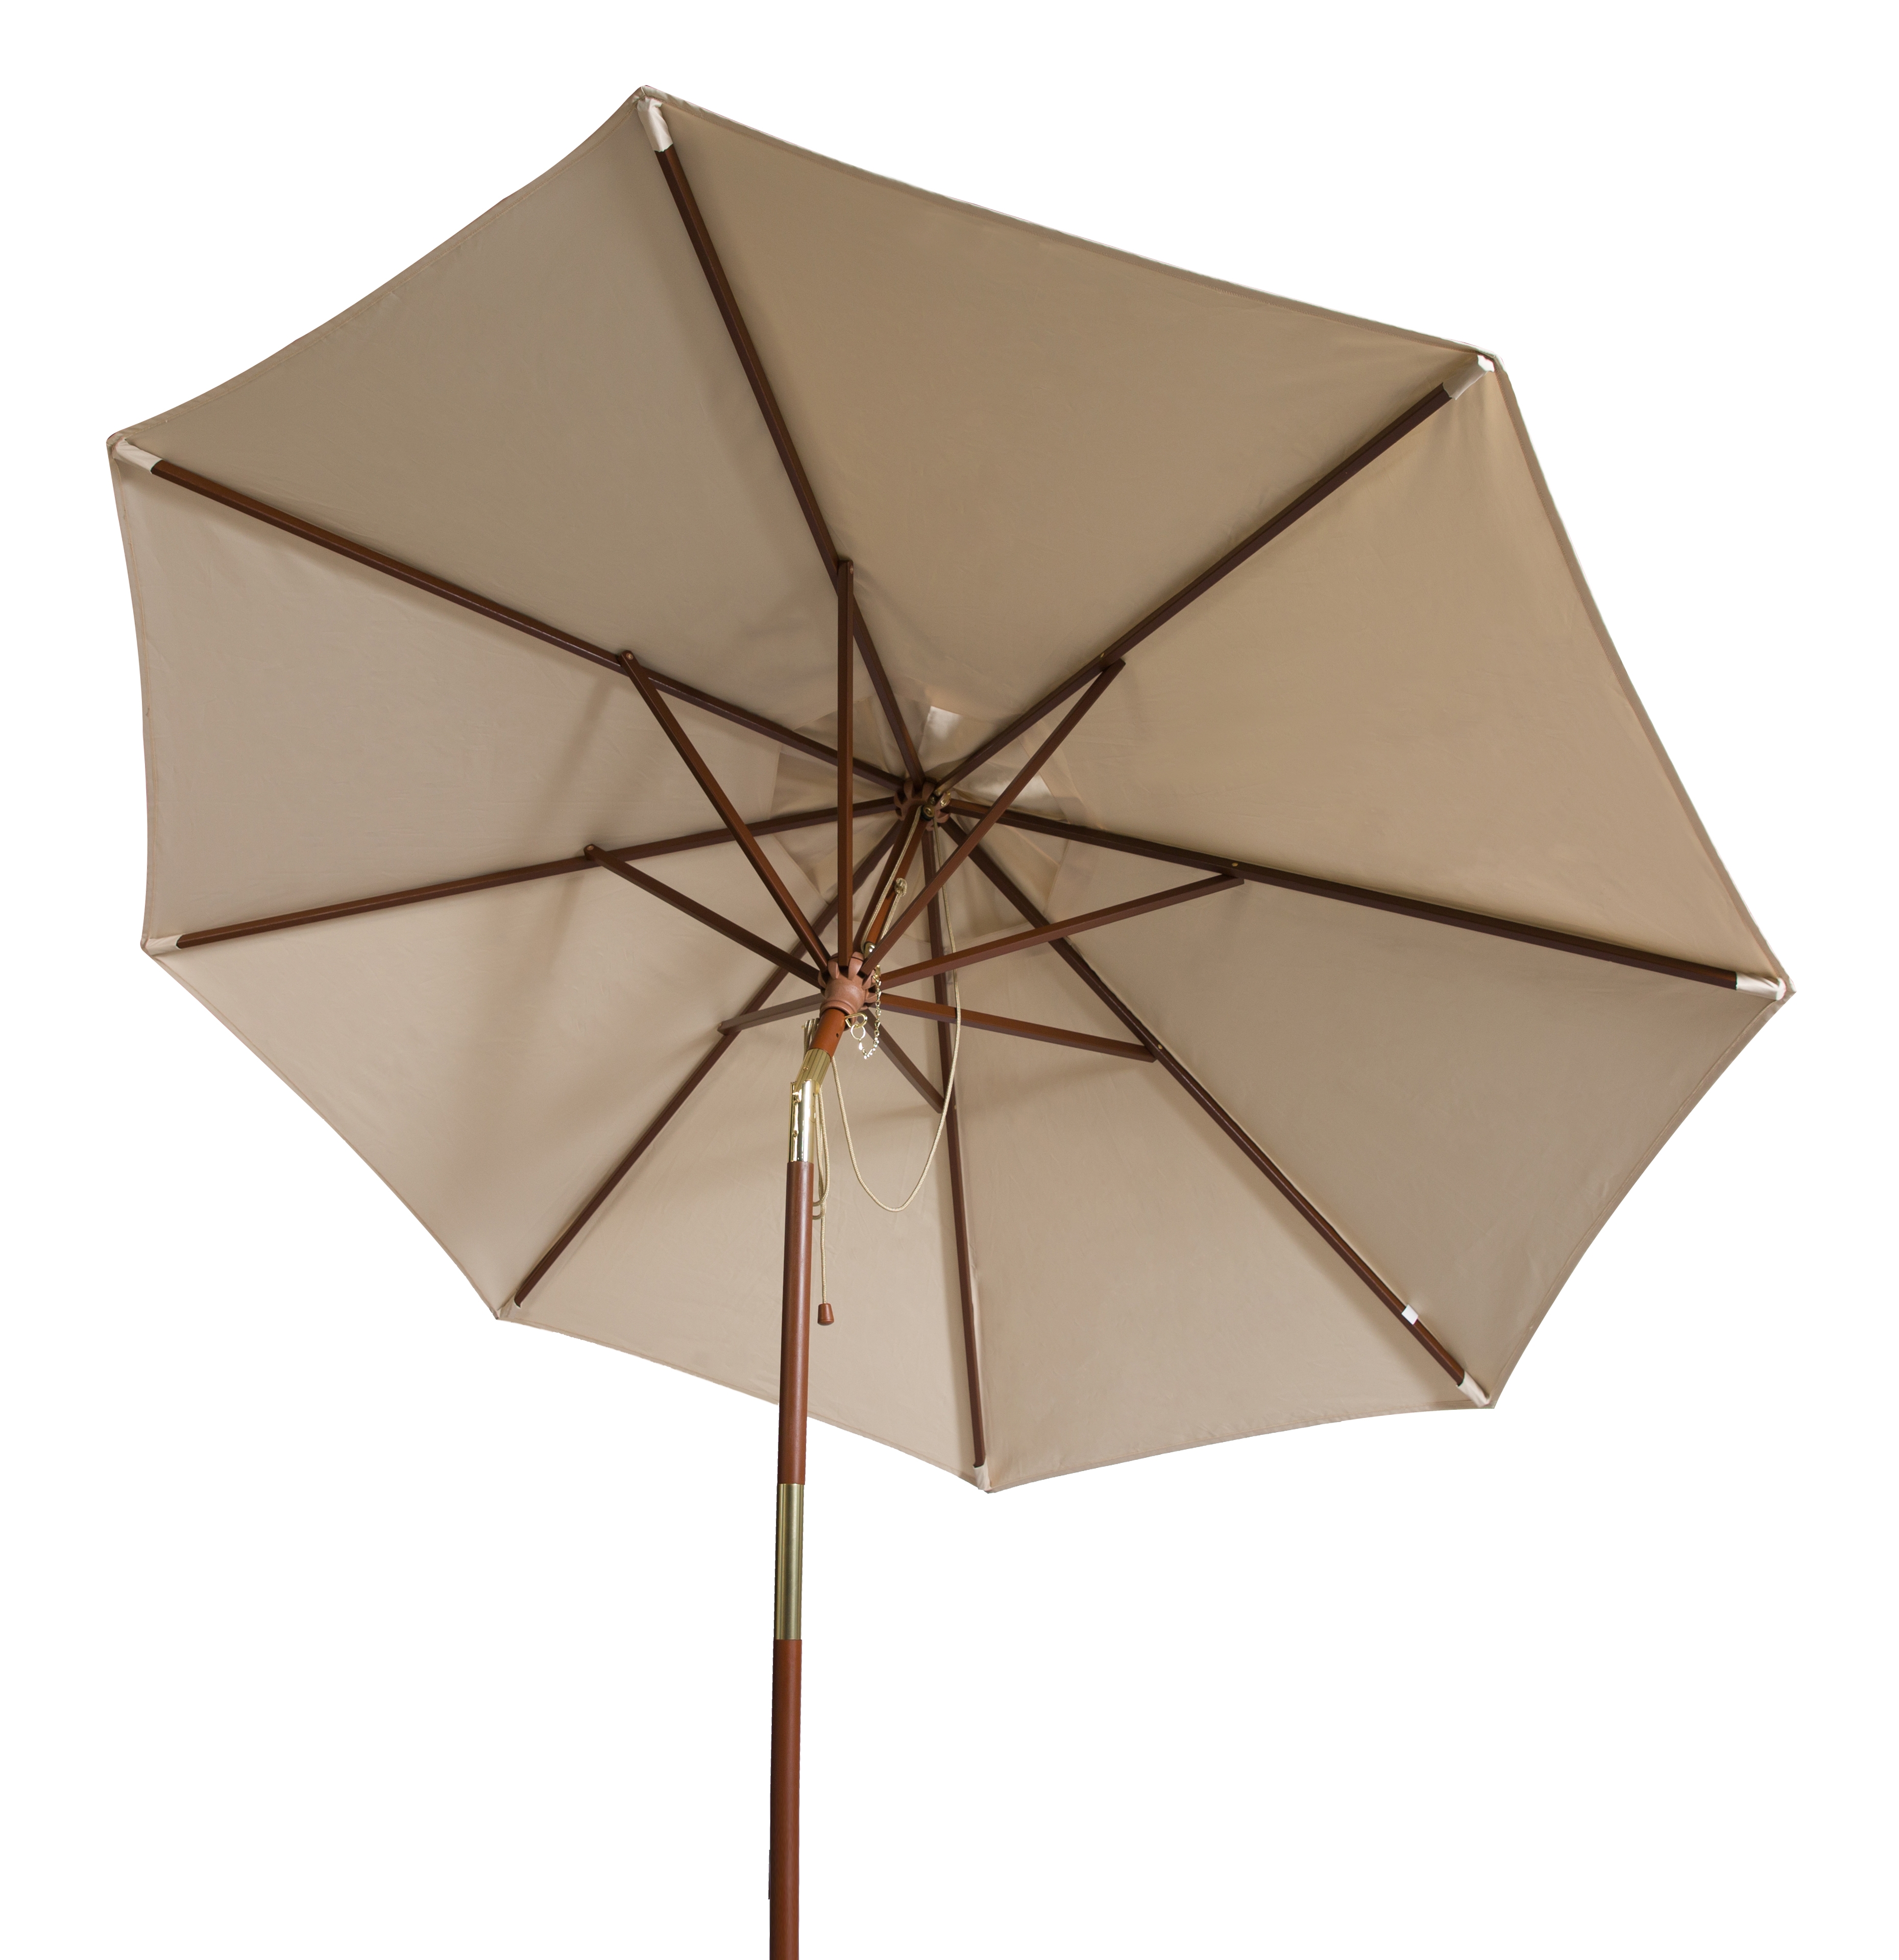 Cannes 9Ft Wooden Outdoor Umbrella, Beige - Image 1